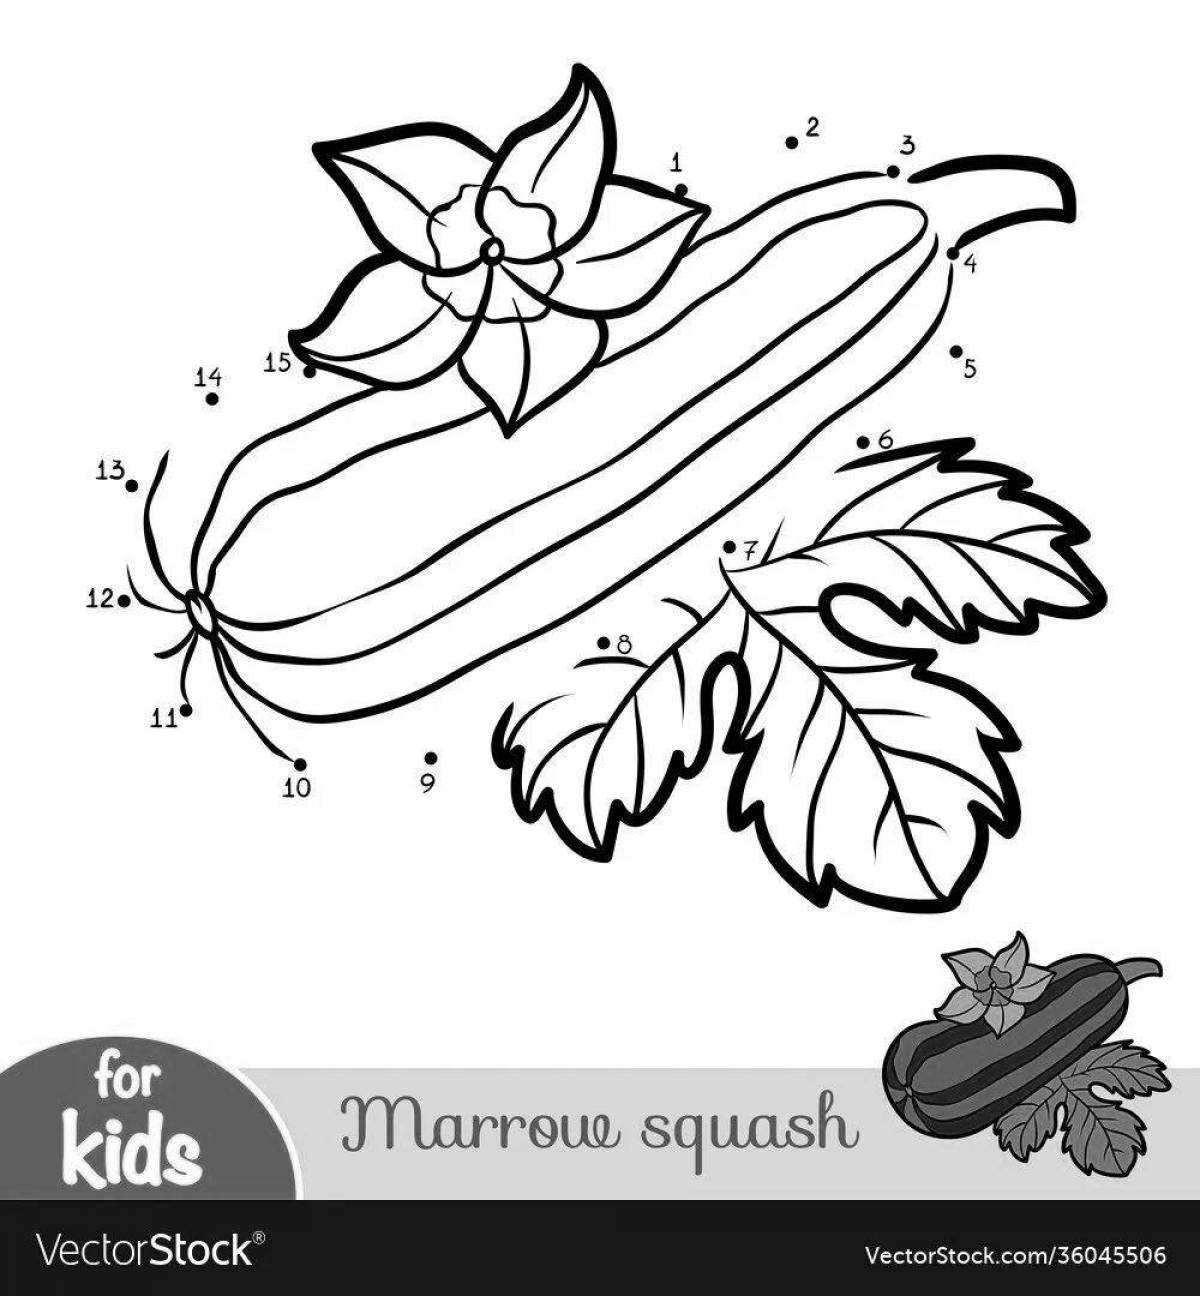 Joyful zucchini coloring for kids